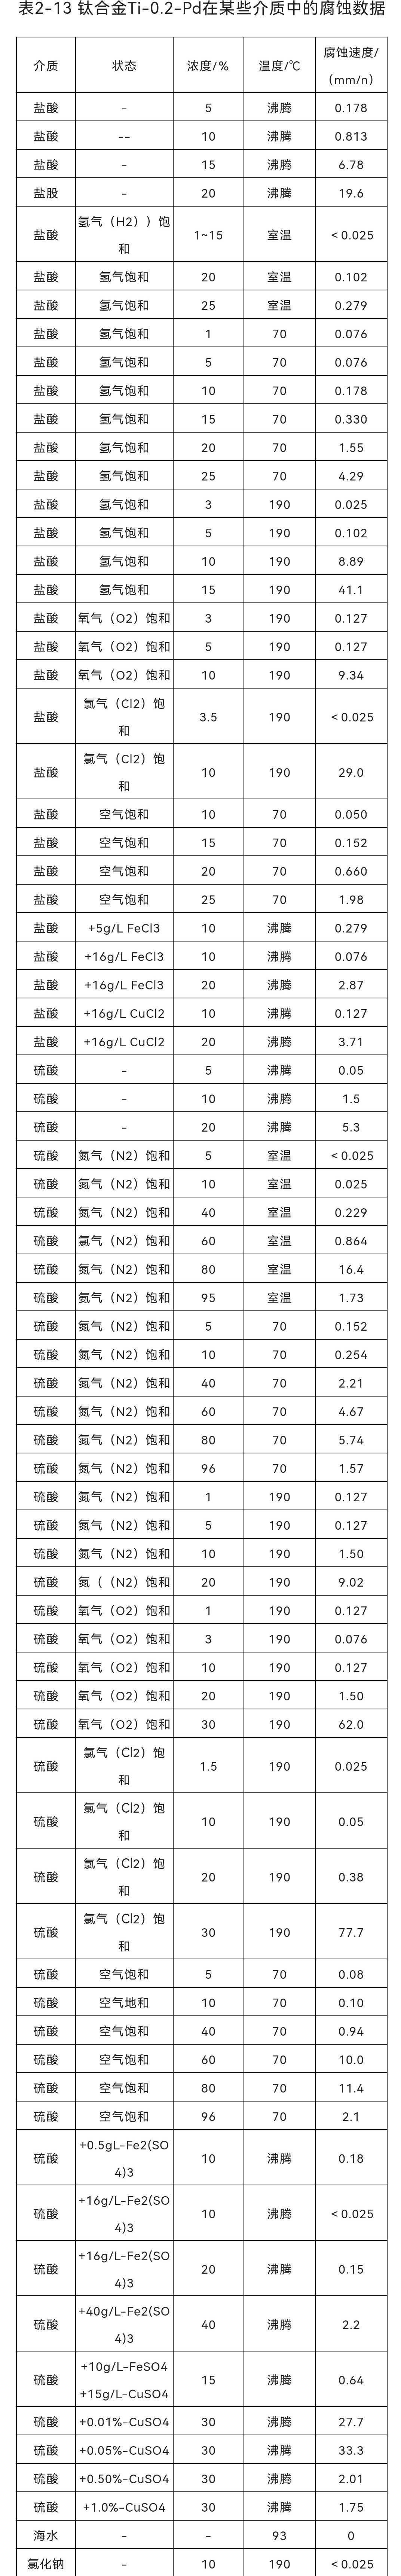 TA9(Ti-0.2Pd)钛合金腐蚀数据表(图1)